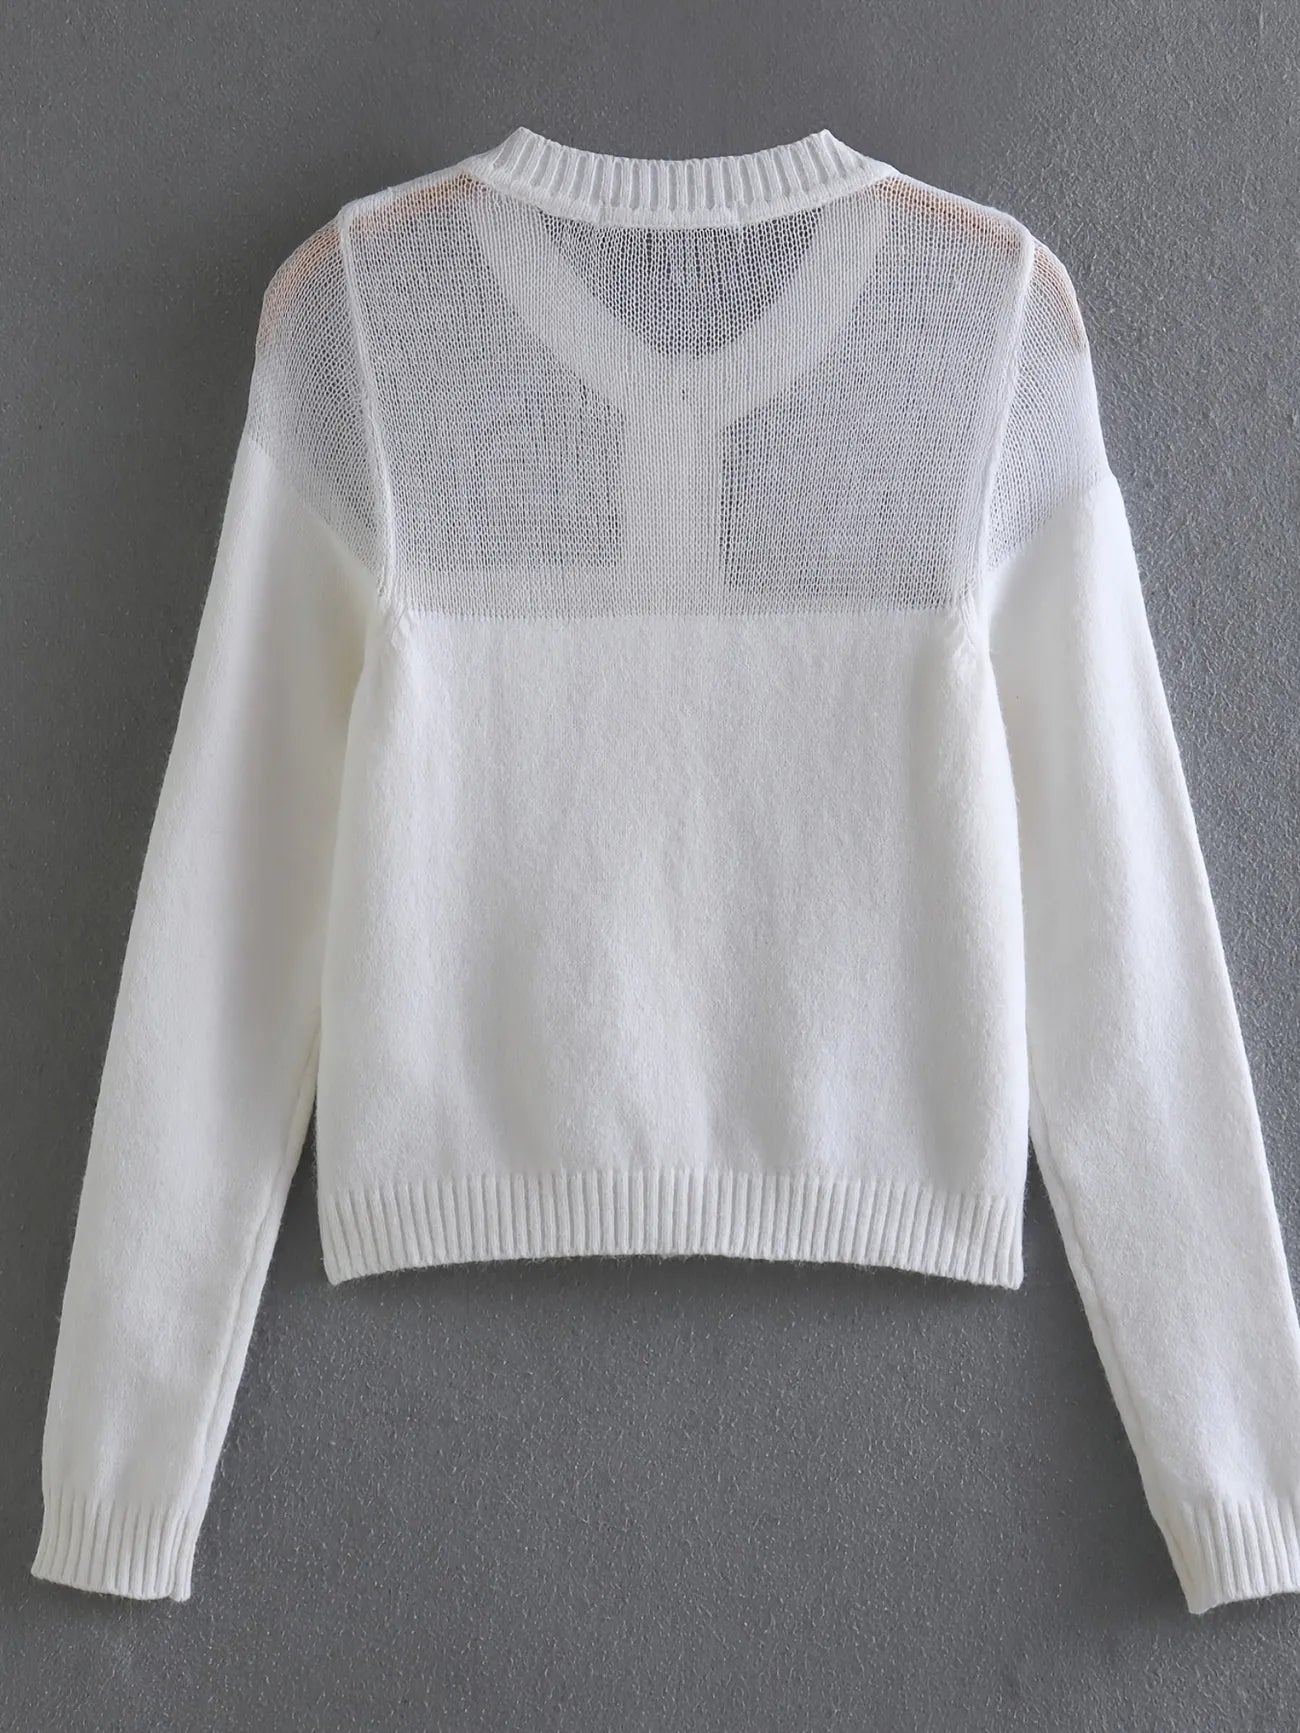 NWOT! Zara fuzzy sweater with jewel buttons sz Lrg